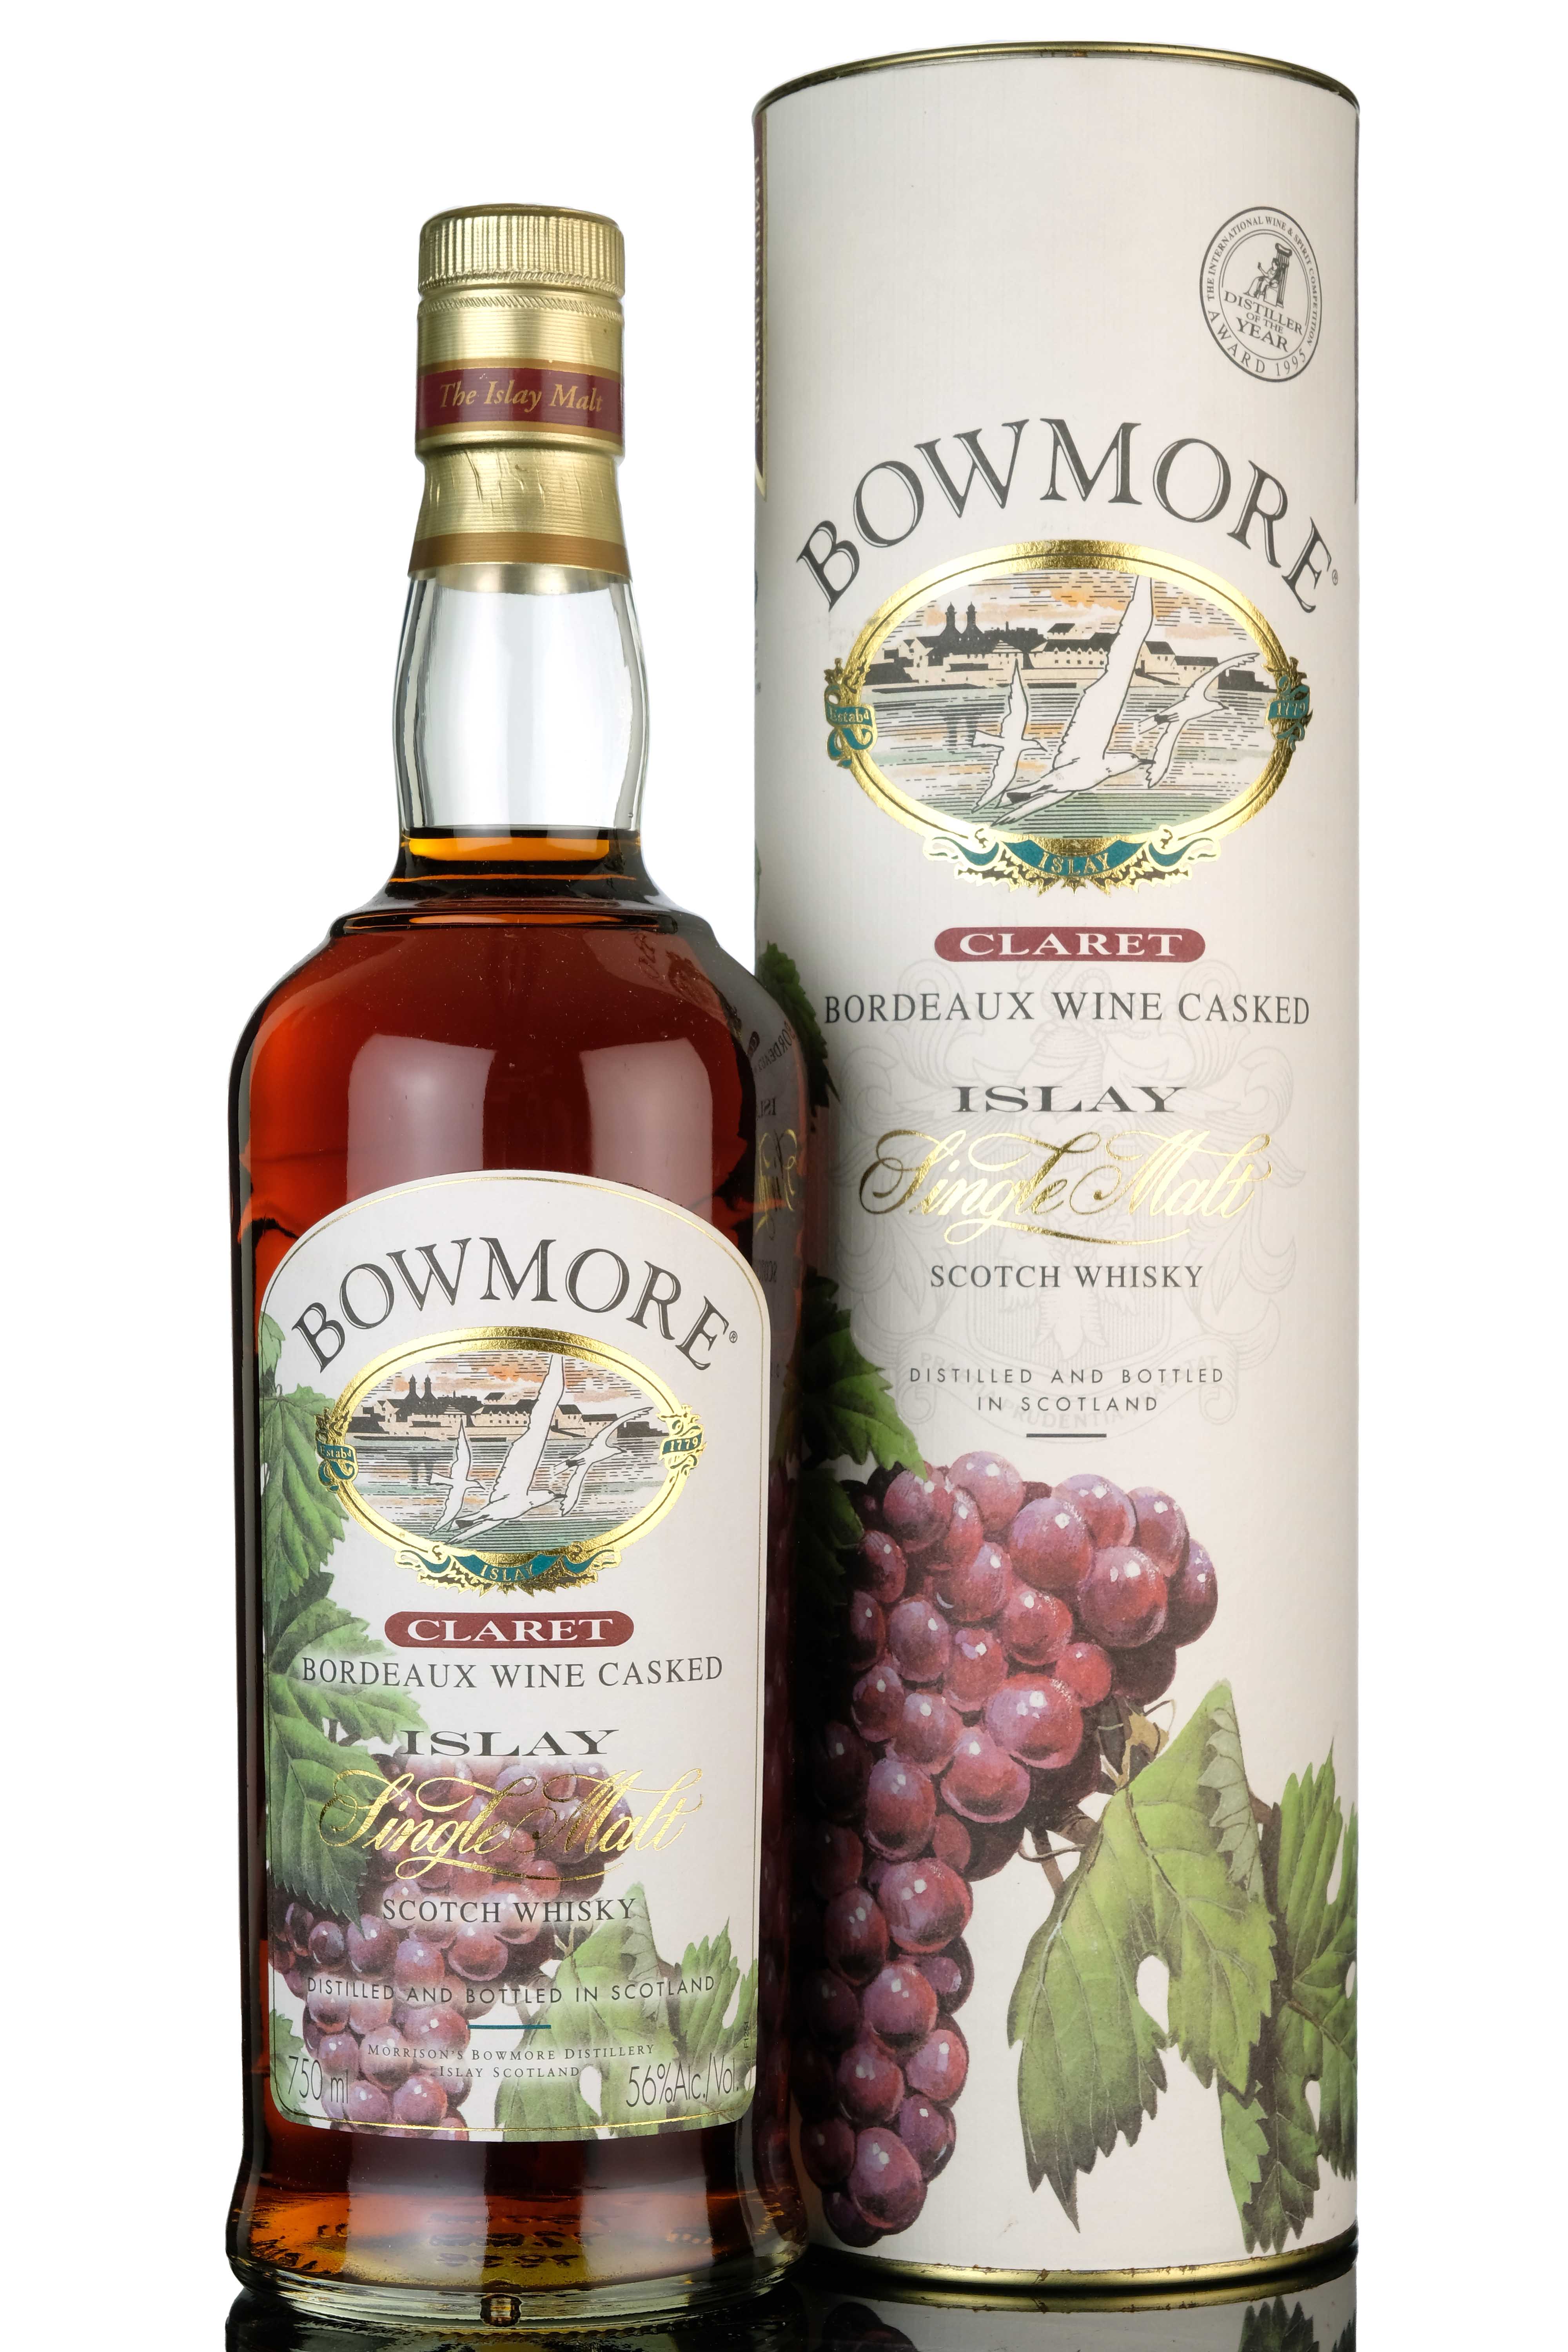 Bowmore Claret - Bordeaux Wine Cask Finish - 1999 Release